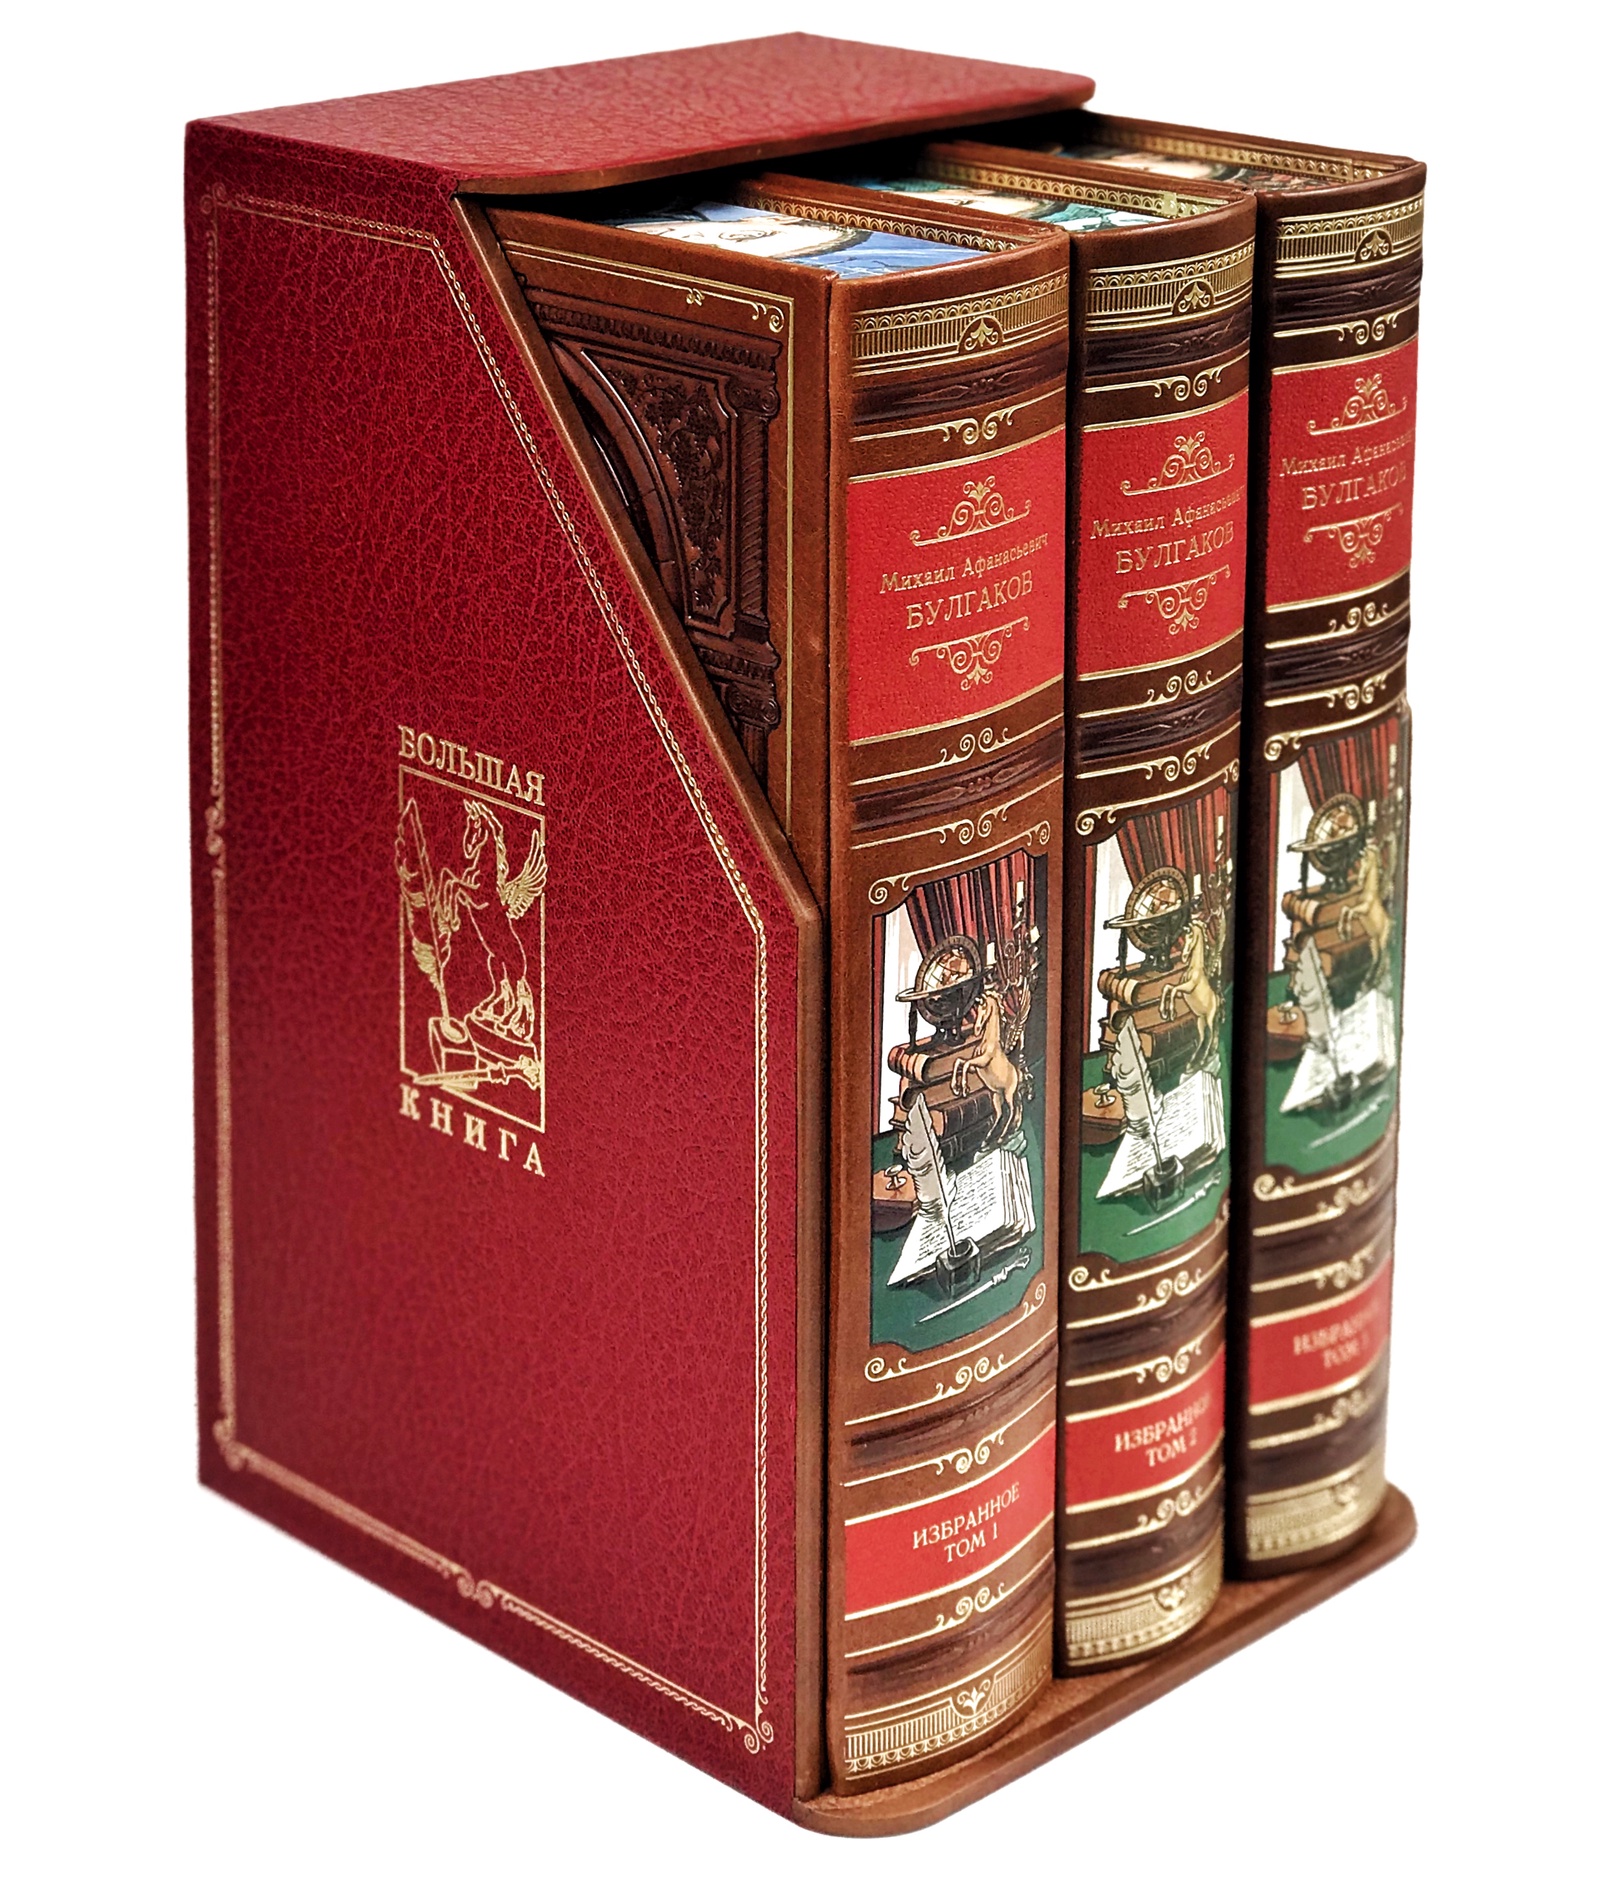 М. А. Булгаков М. А. Булгаков Избранное. 3 тома. Подарочный набор в кожаном коробе, в кожаном переплете. BookTrw023